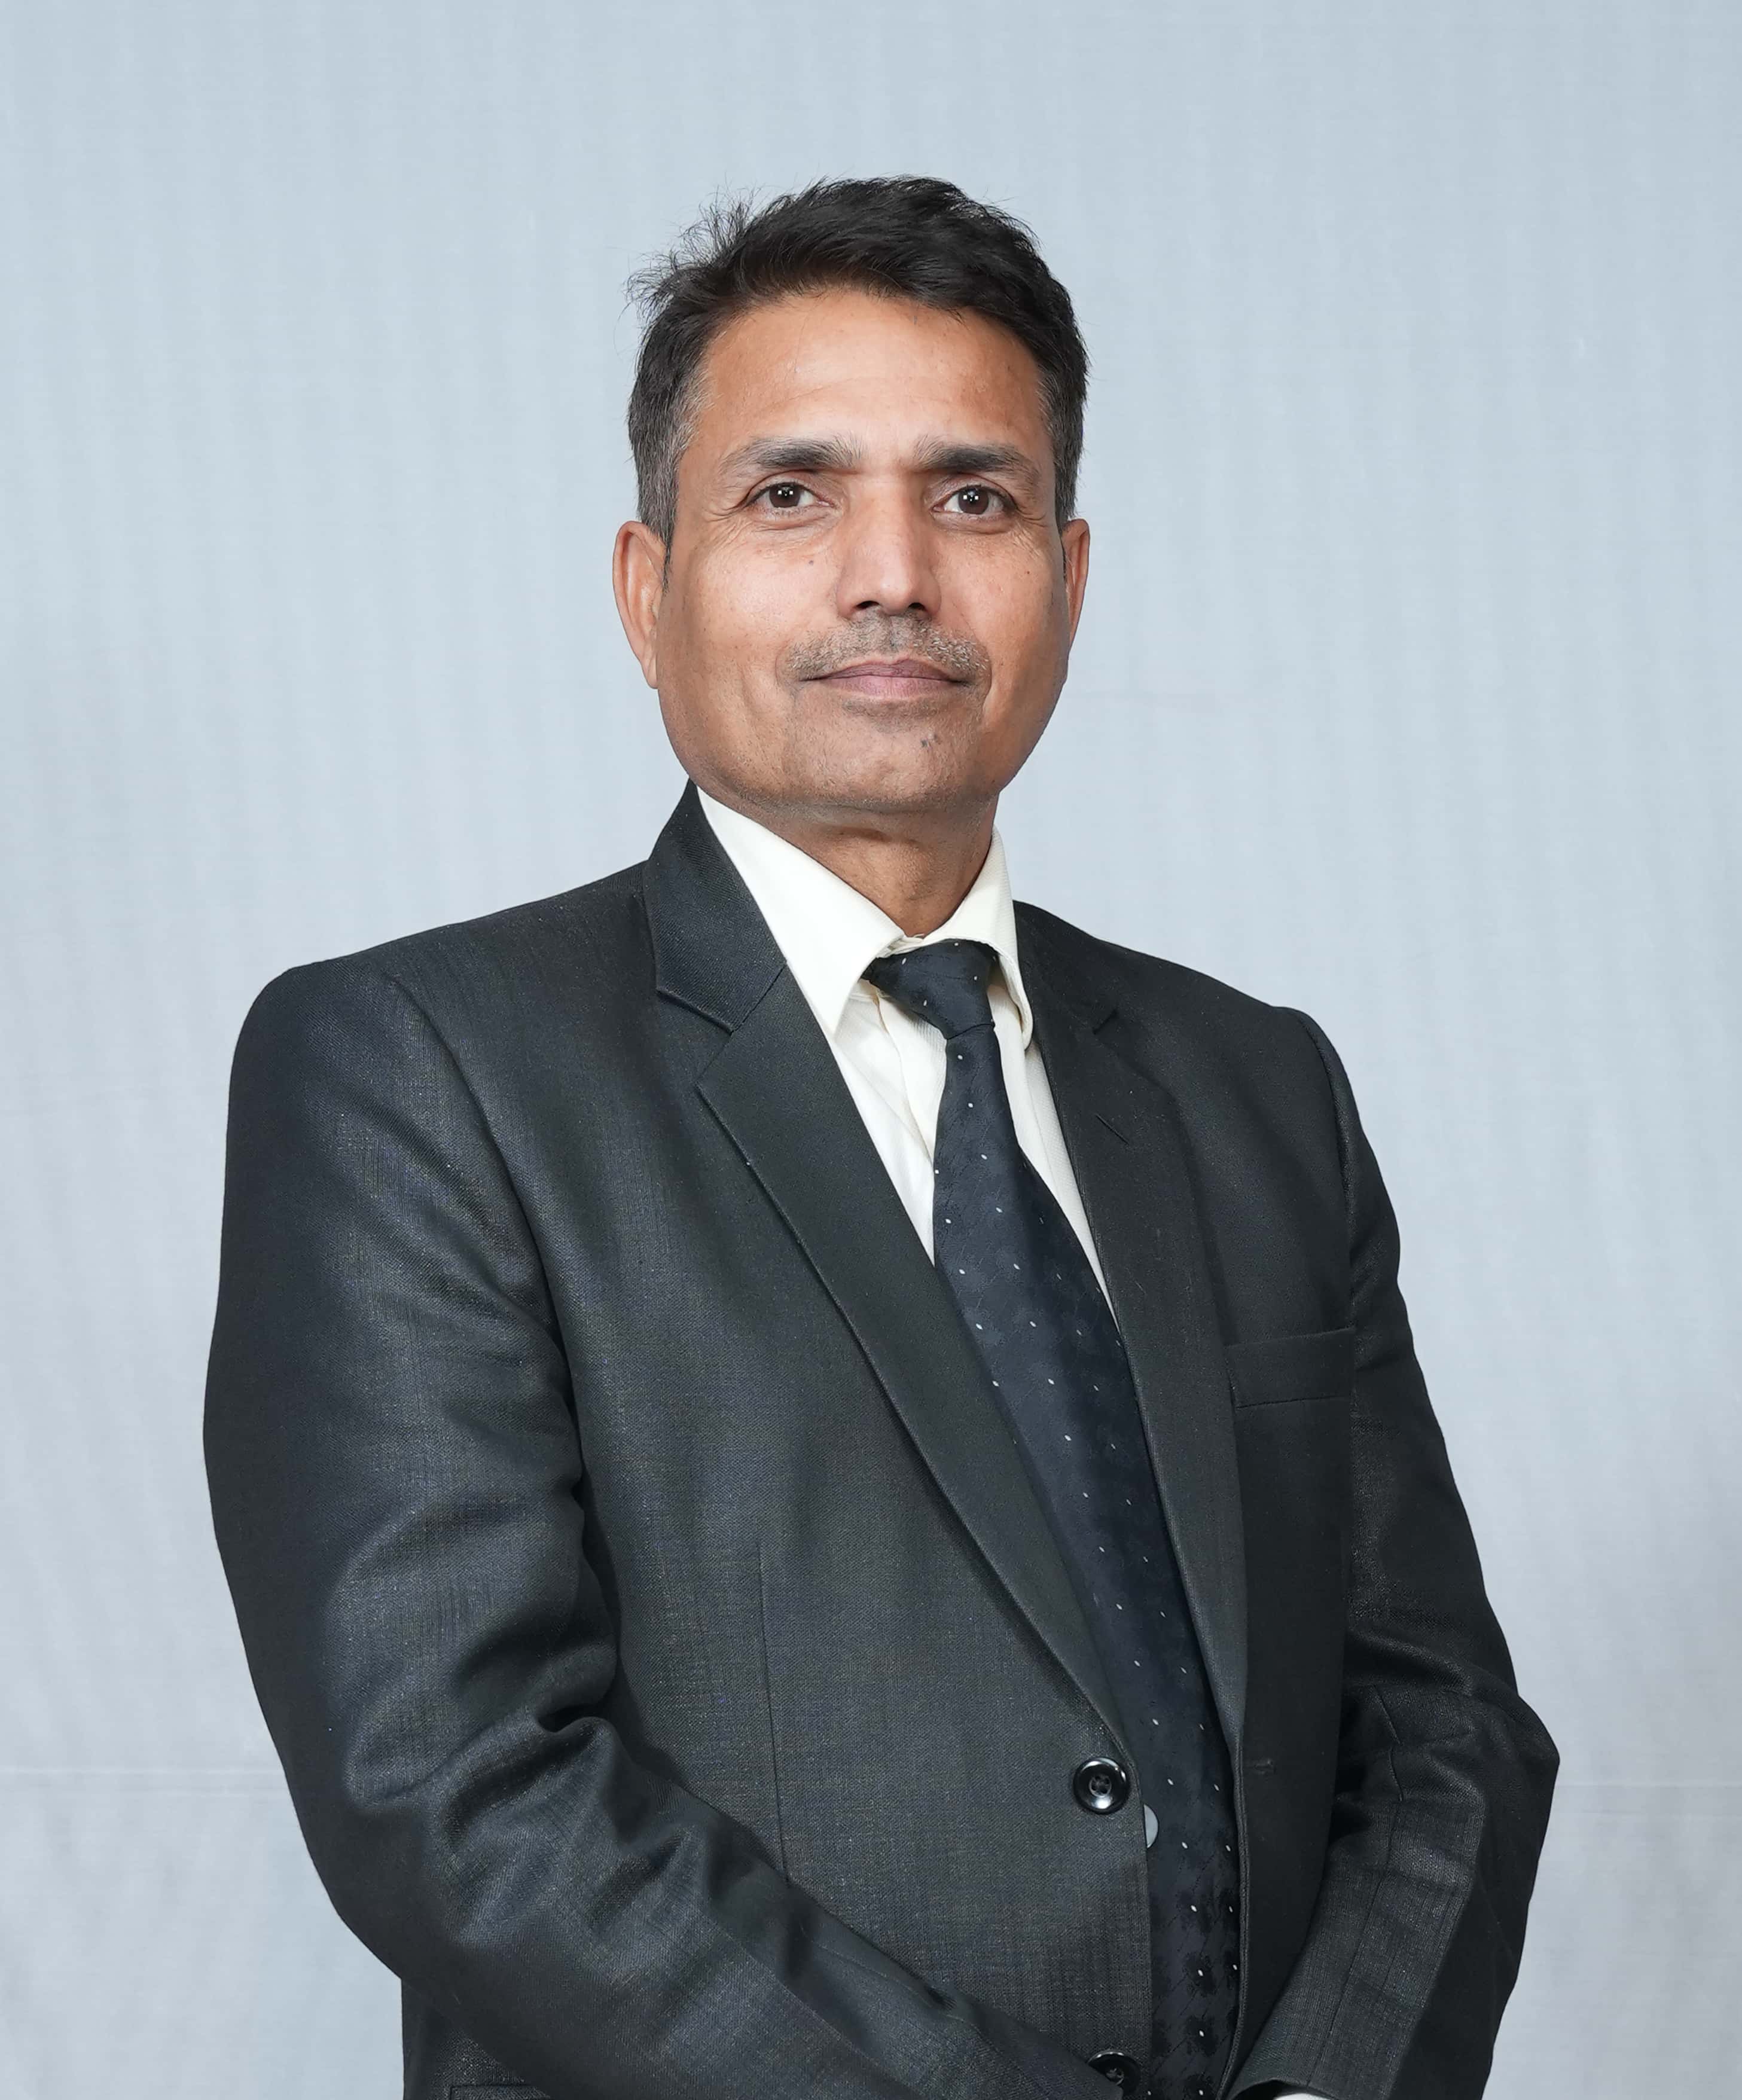 Mr. Jalaj Kumar Adhikari